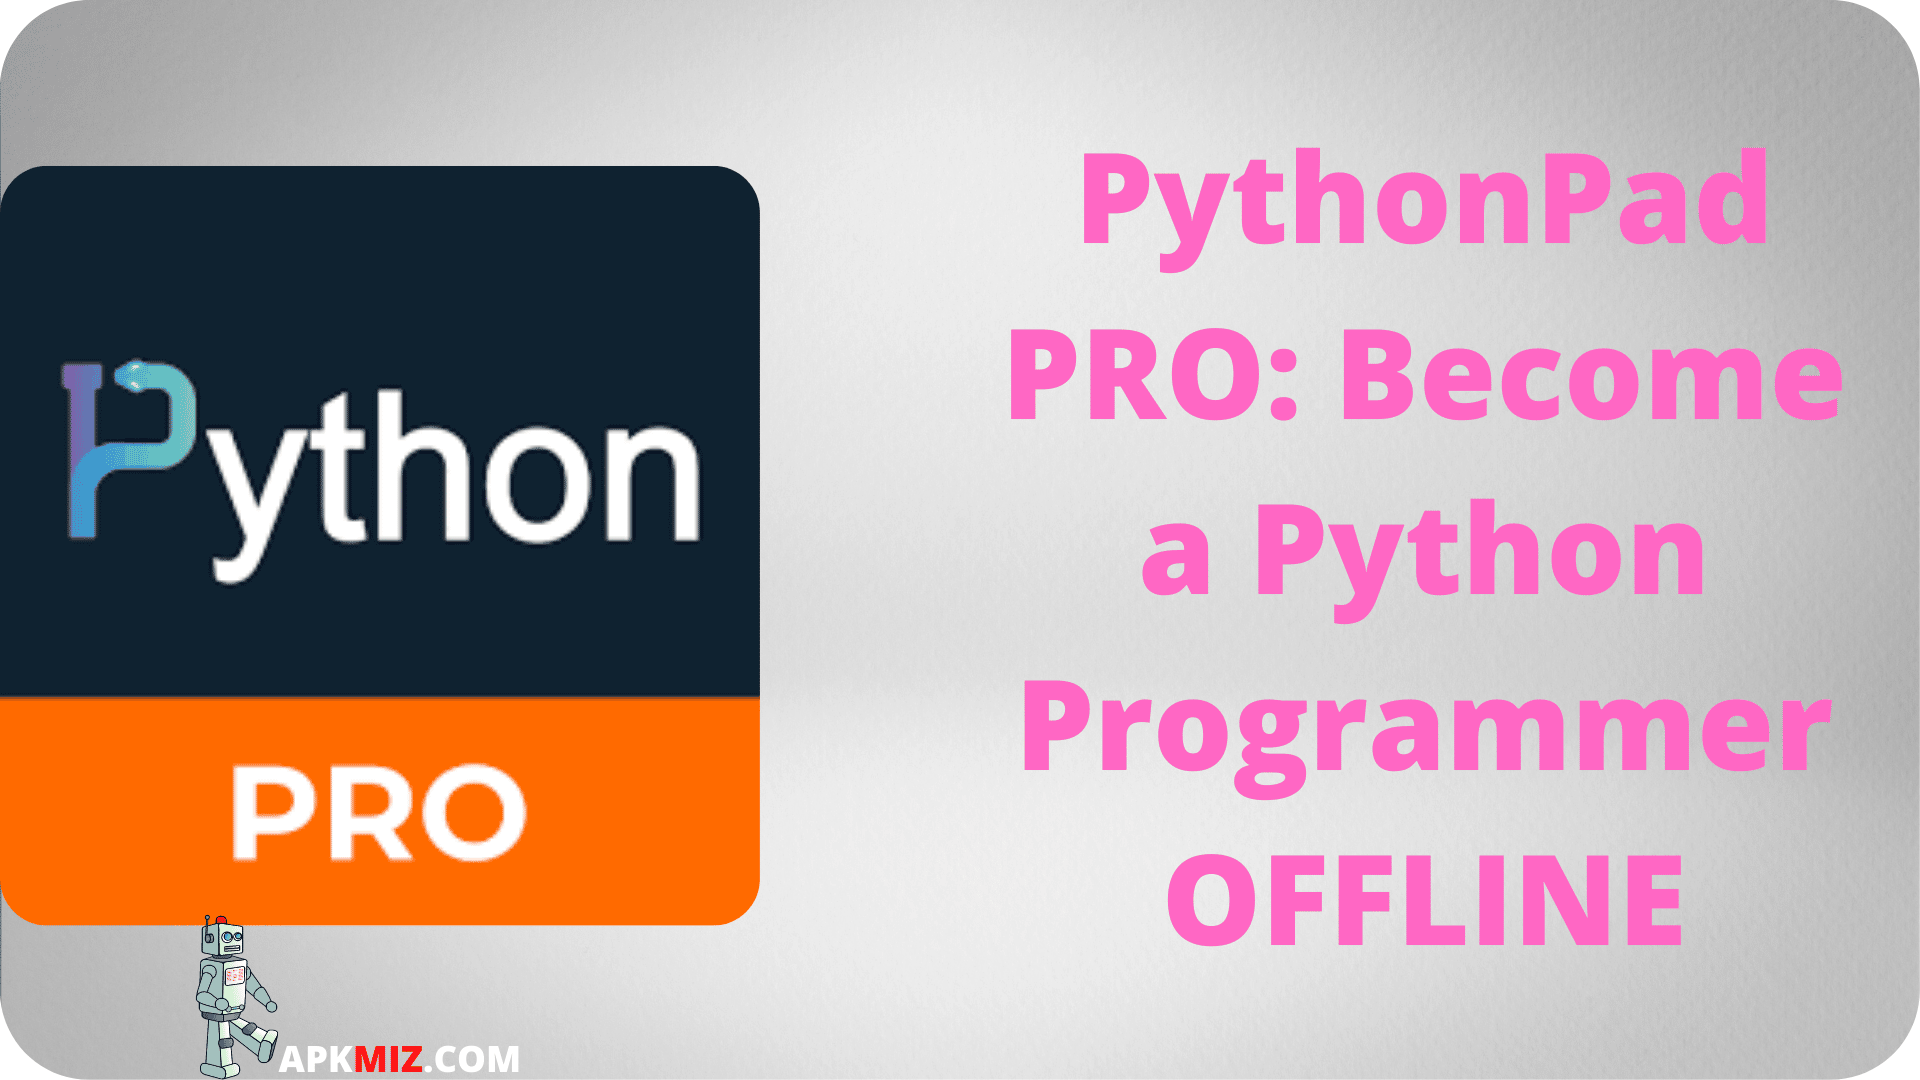 PythonPad Pro Become a Python Expert Offline Mod Apk